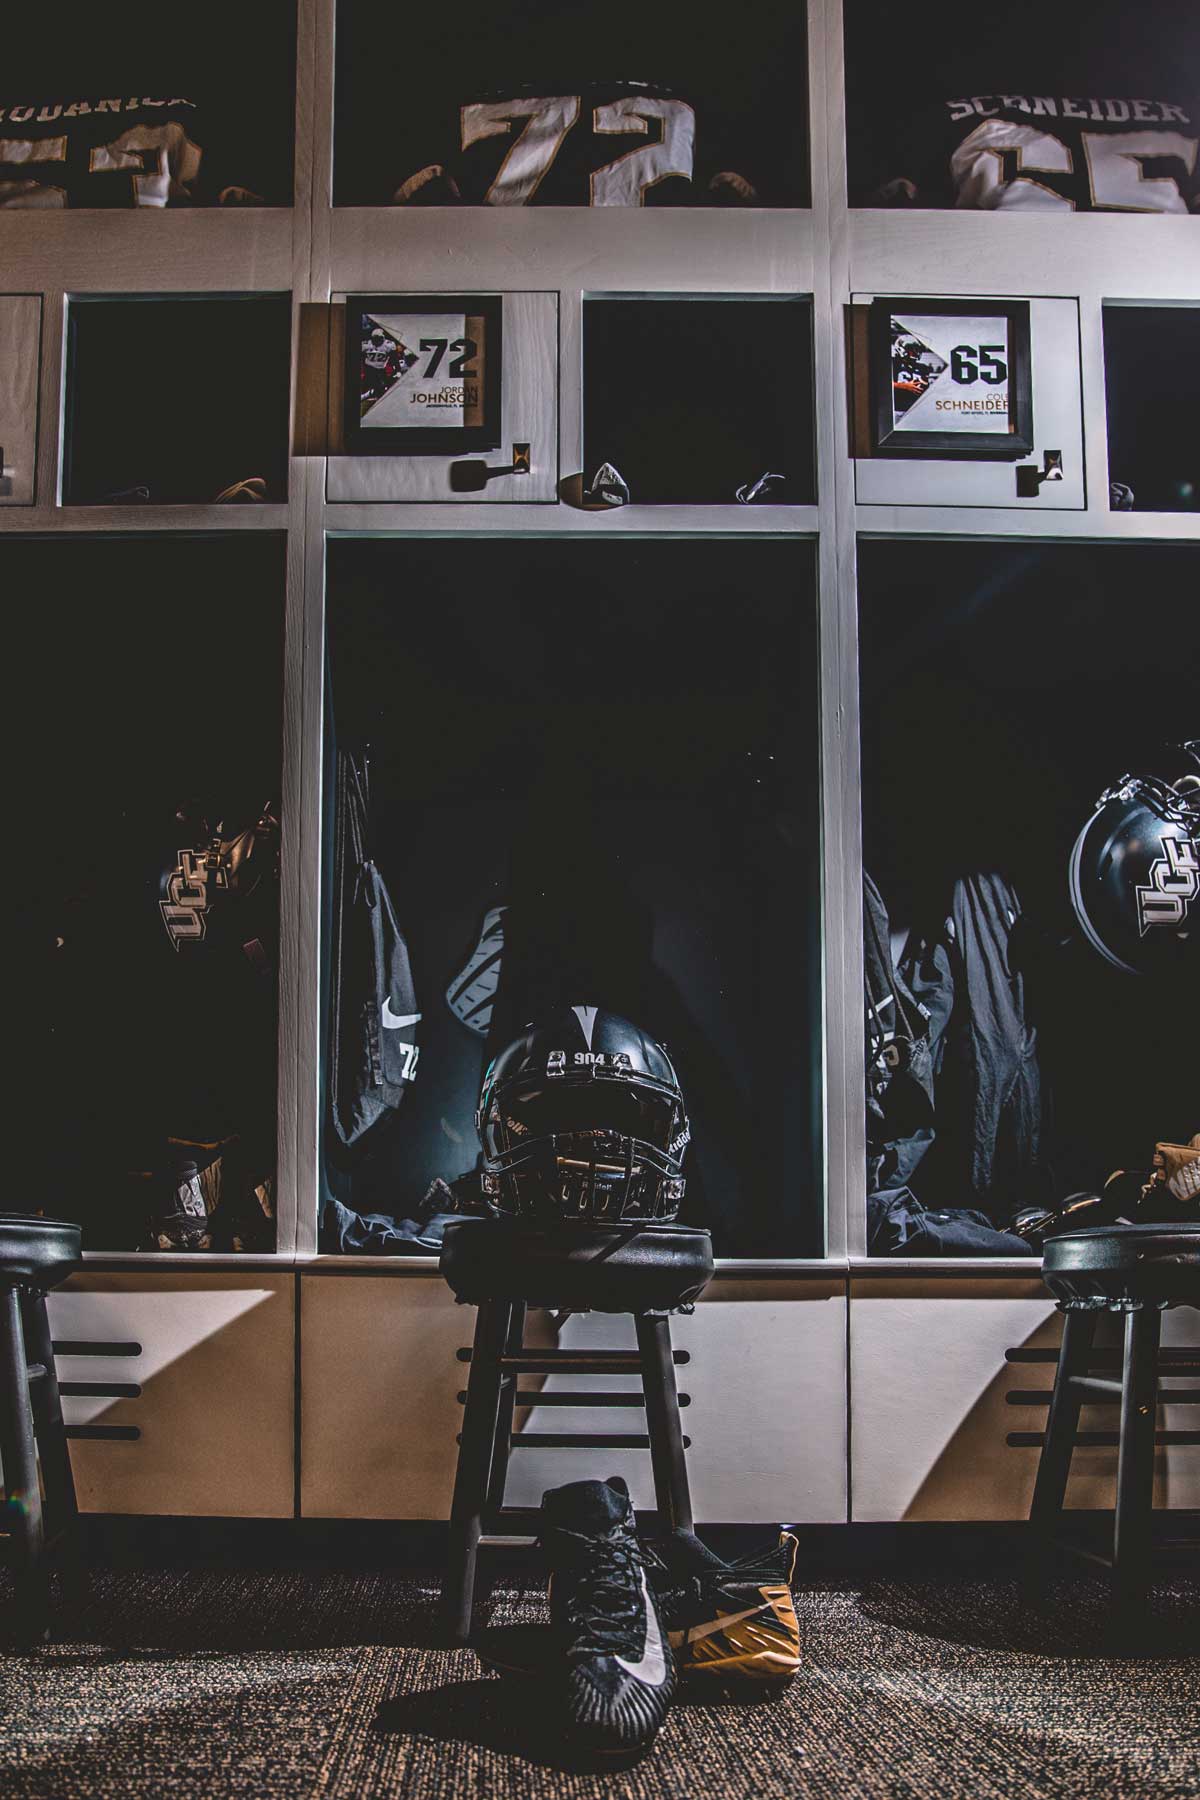 Row of three lockers with black football helmets and jerseys